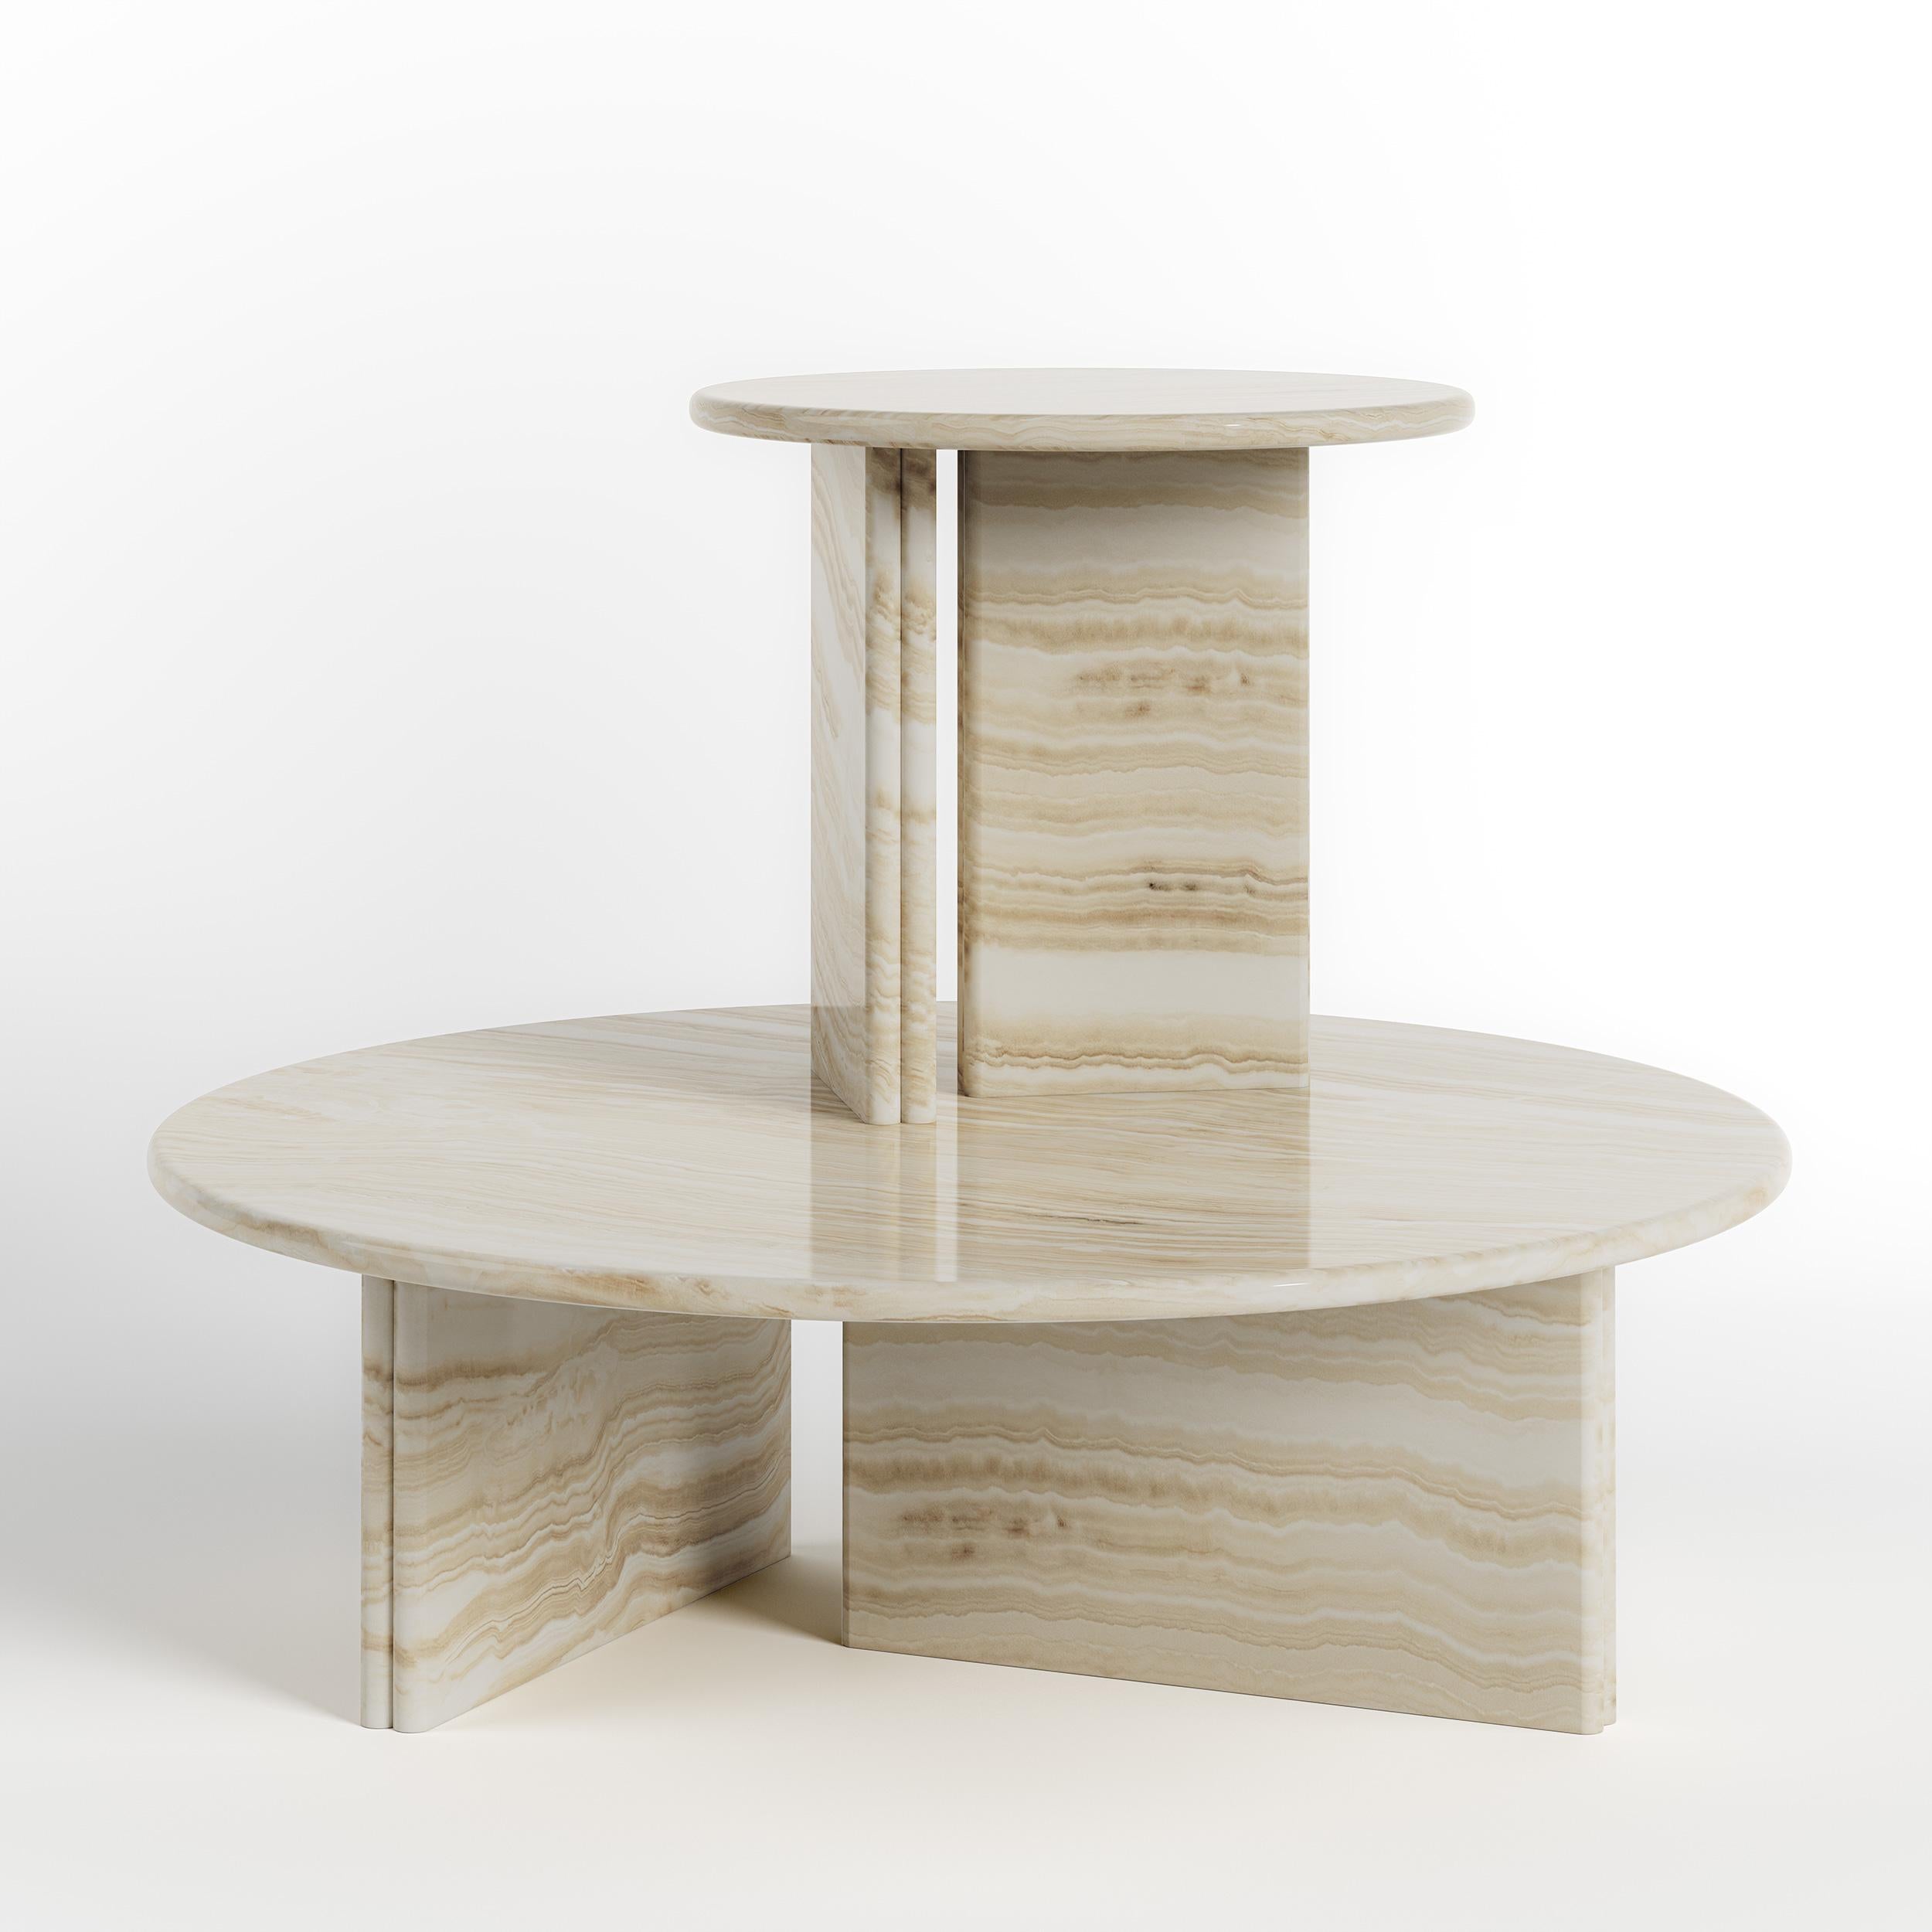 La table Onda se caractérise par ses formes douces et ses finitions audacieuses en pierre. Le nom Onda, qui signifie 